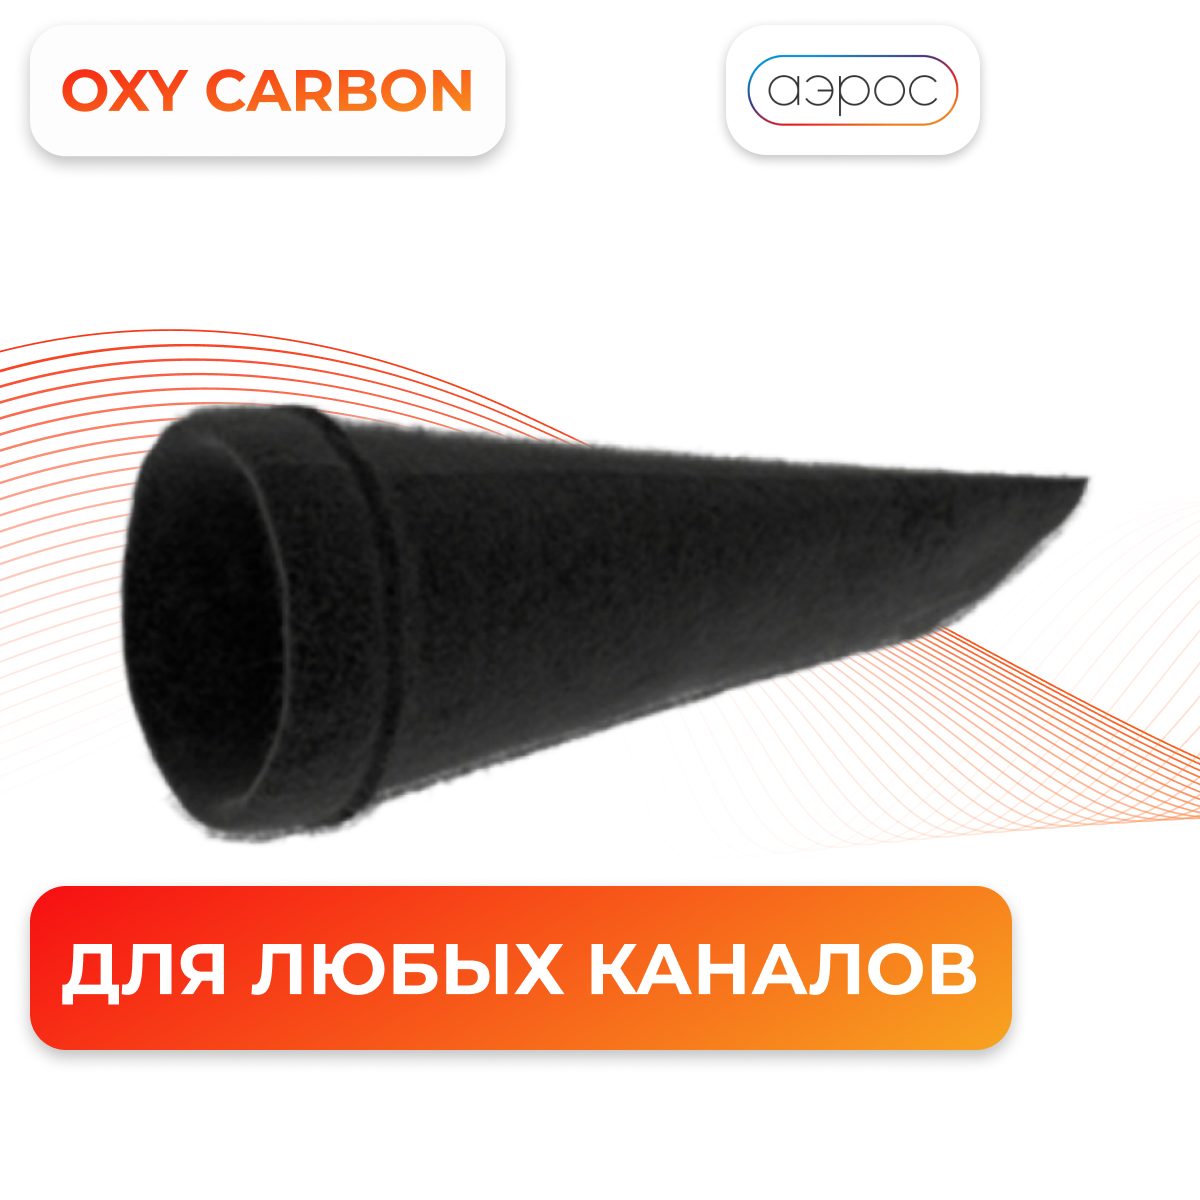 Универсальный угольный фильтр от газов и запахов 125 мм